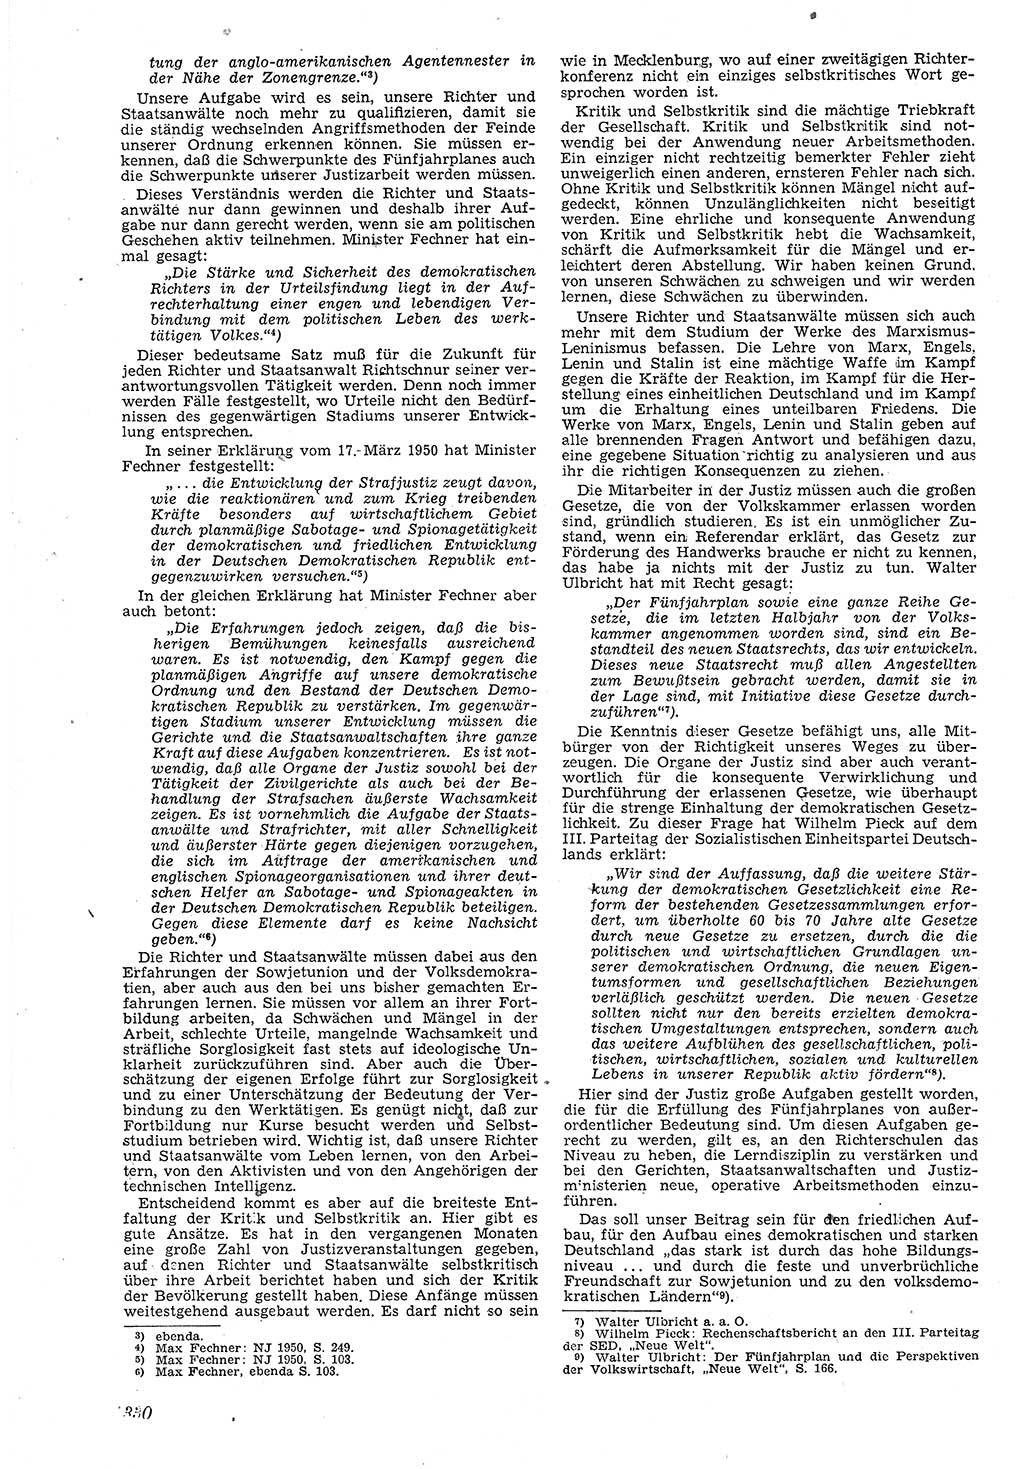 Neue Justiz (NJ), Zeitschrift für Recht und Rechtswissenschaft [Deutsche Demokratische Republik (DDR)], 4. Jahrgang 1950, Seite 330 (NJ DDR 1950, S. 330)